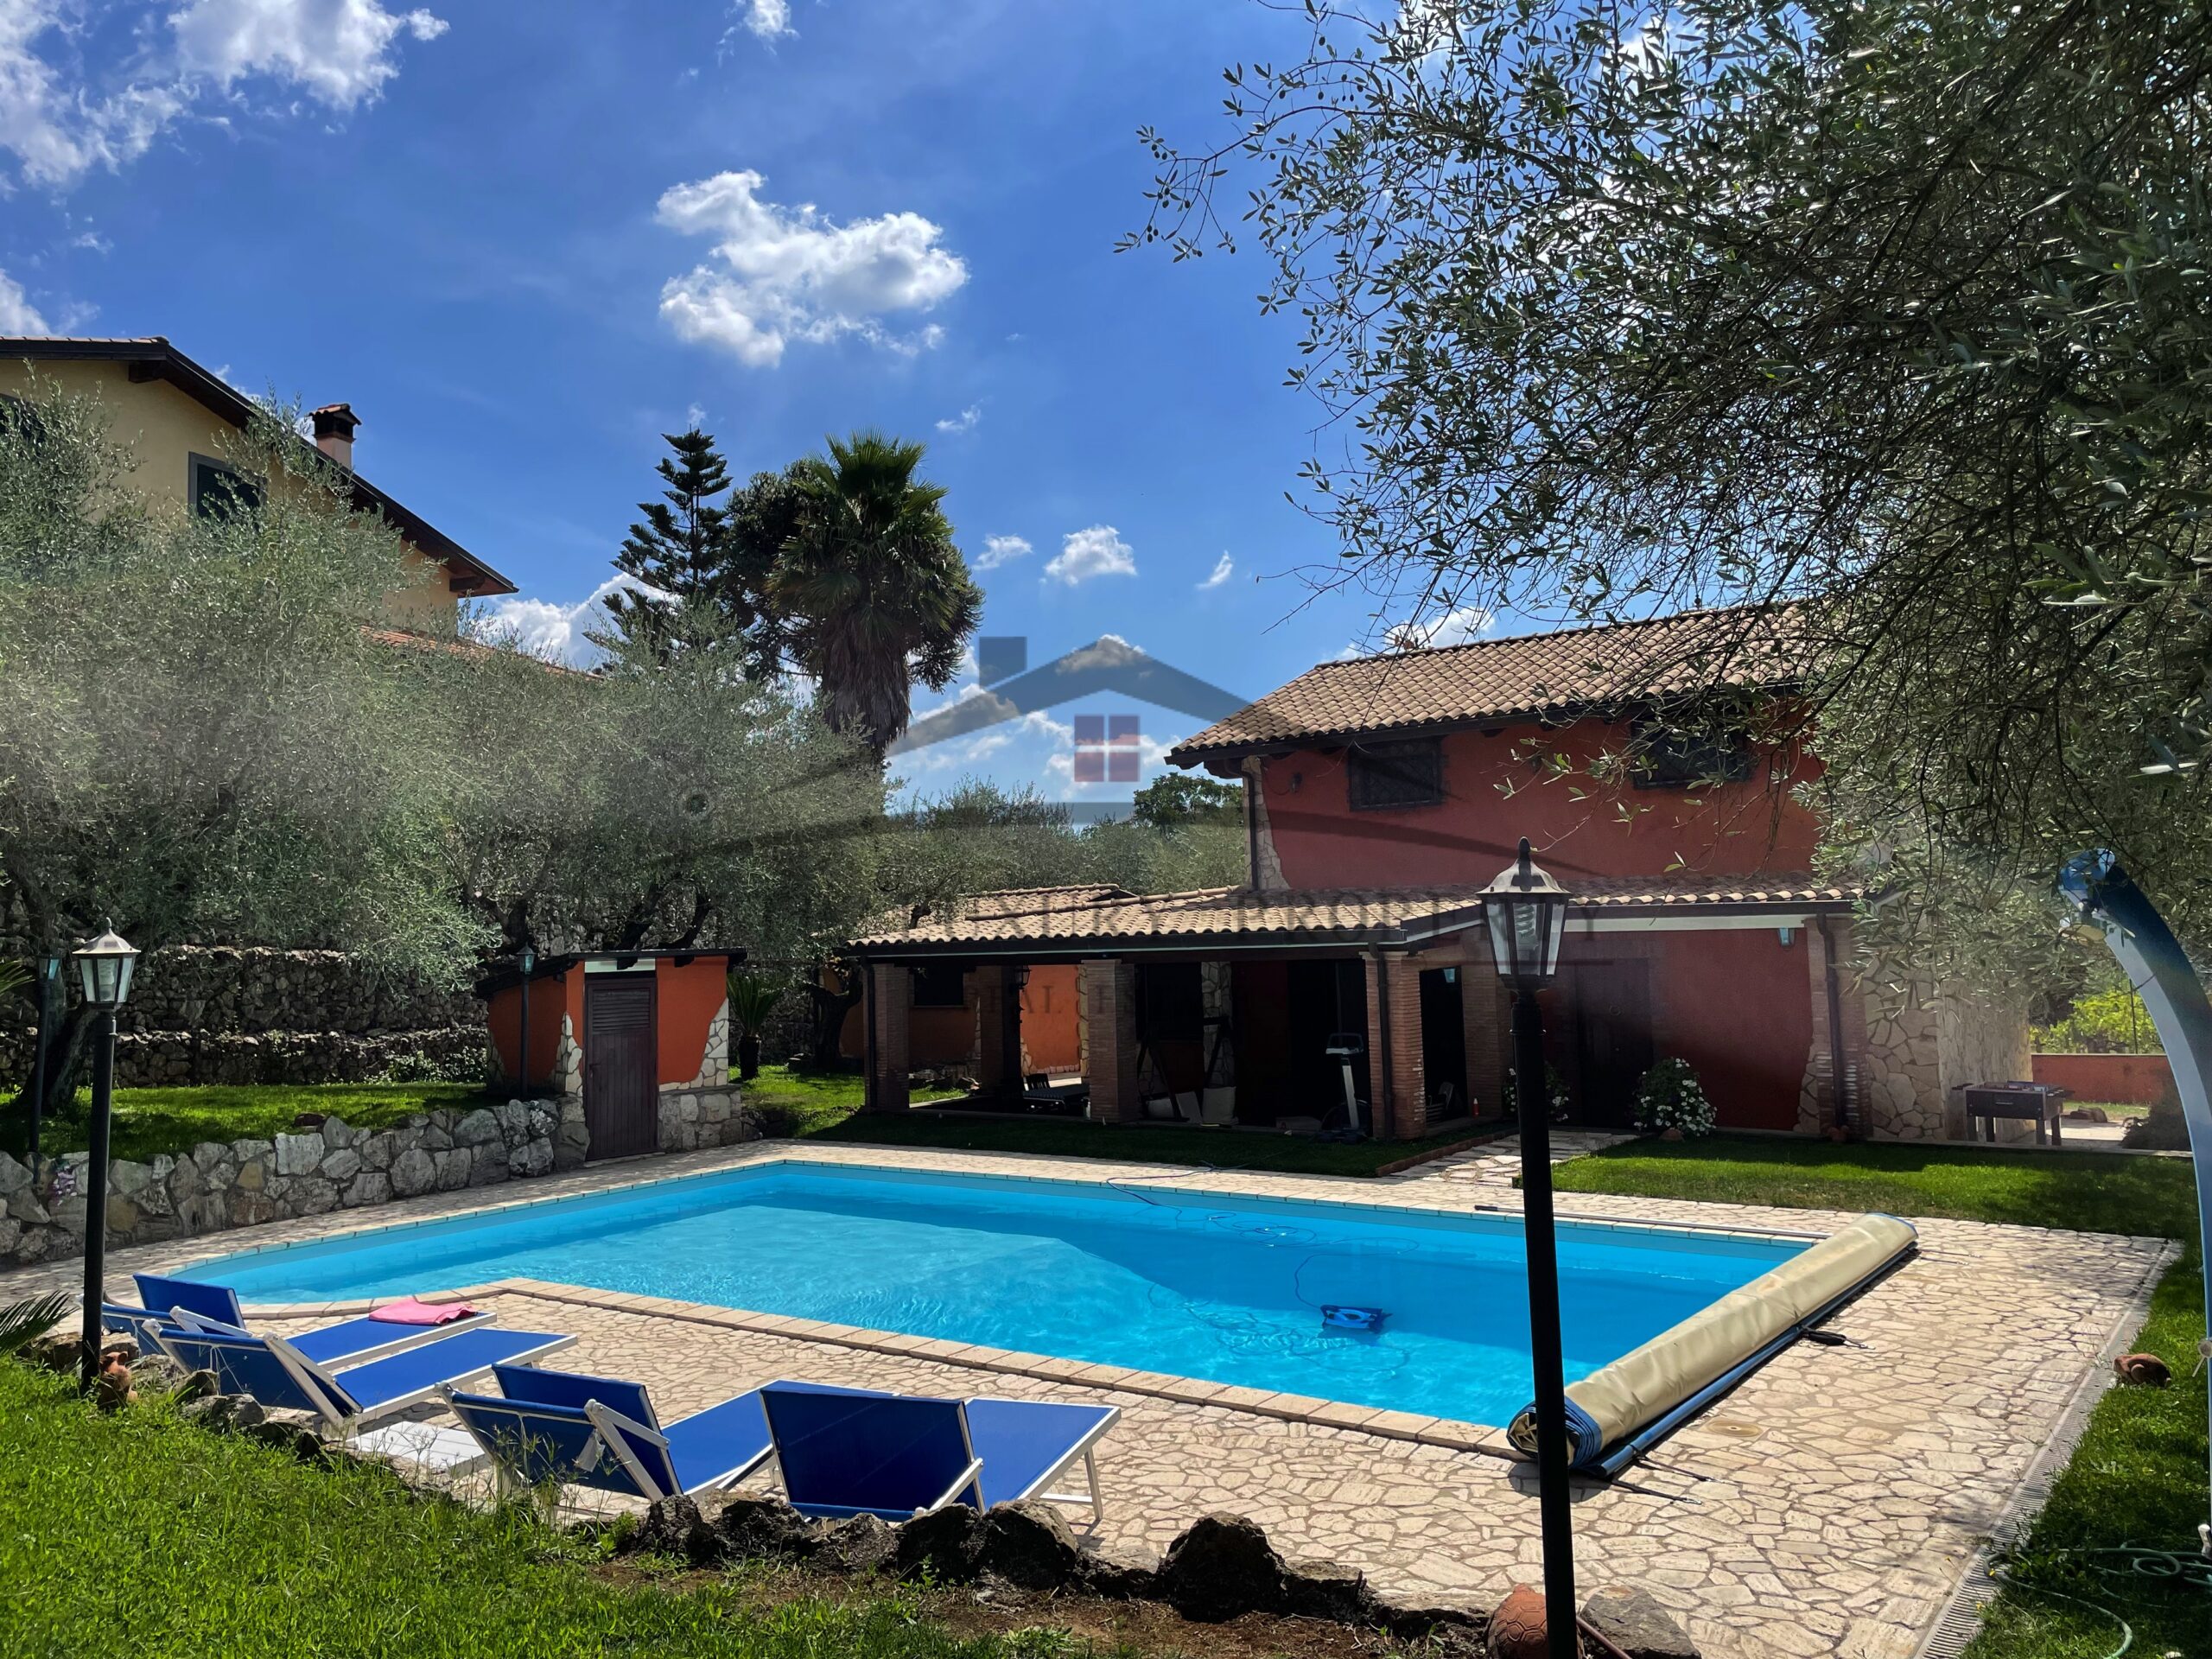 Villa con piscina in vendita Velletri